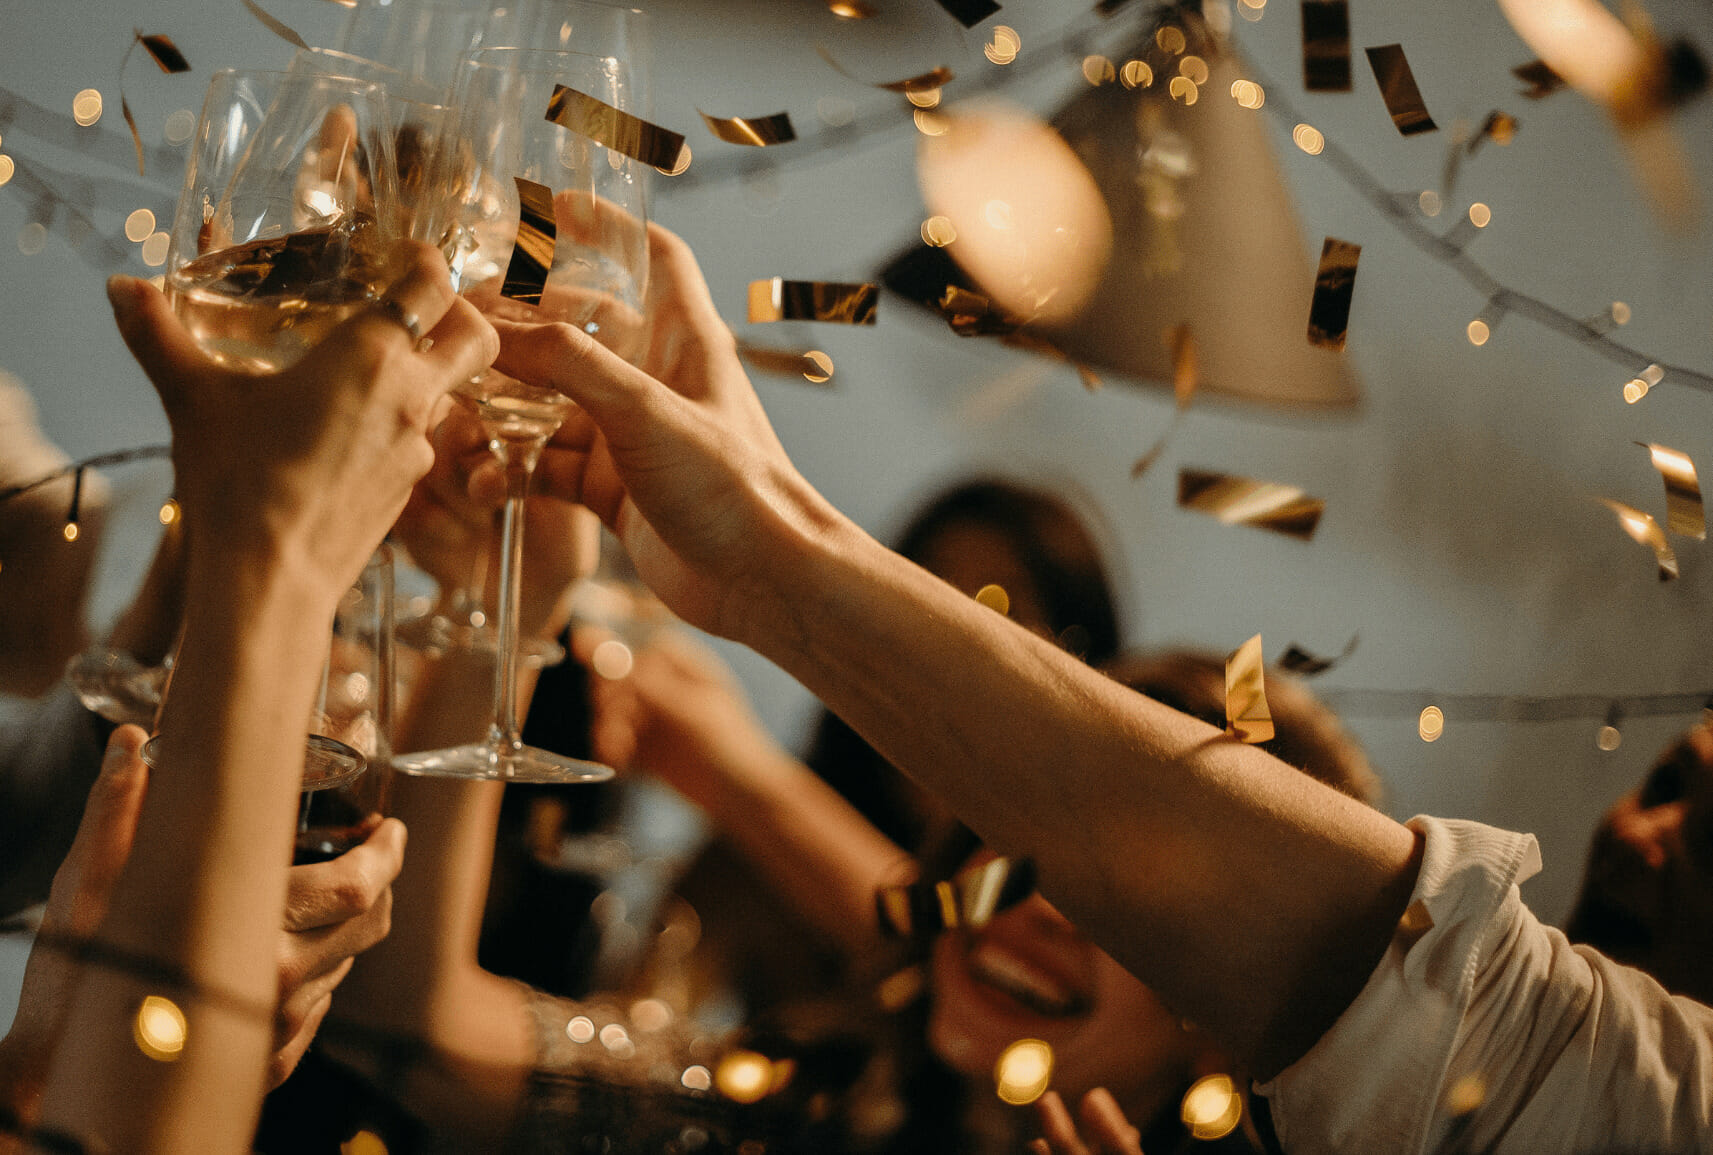 街コンで乾杯する様子。飛び散る金色の紙吹雪の中、複数の手がワイングラスを掲げ合っている。セレブレーションの雰囲気が感じられる華やかな一コマ。